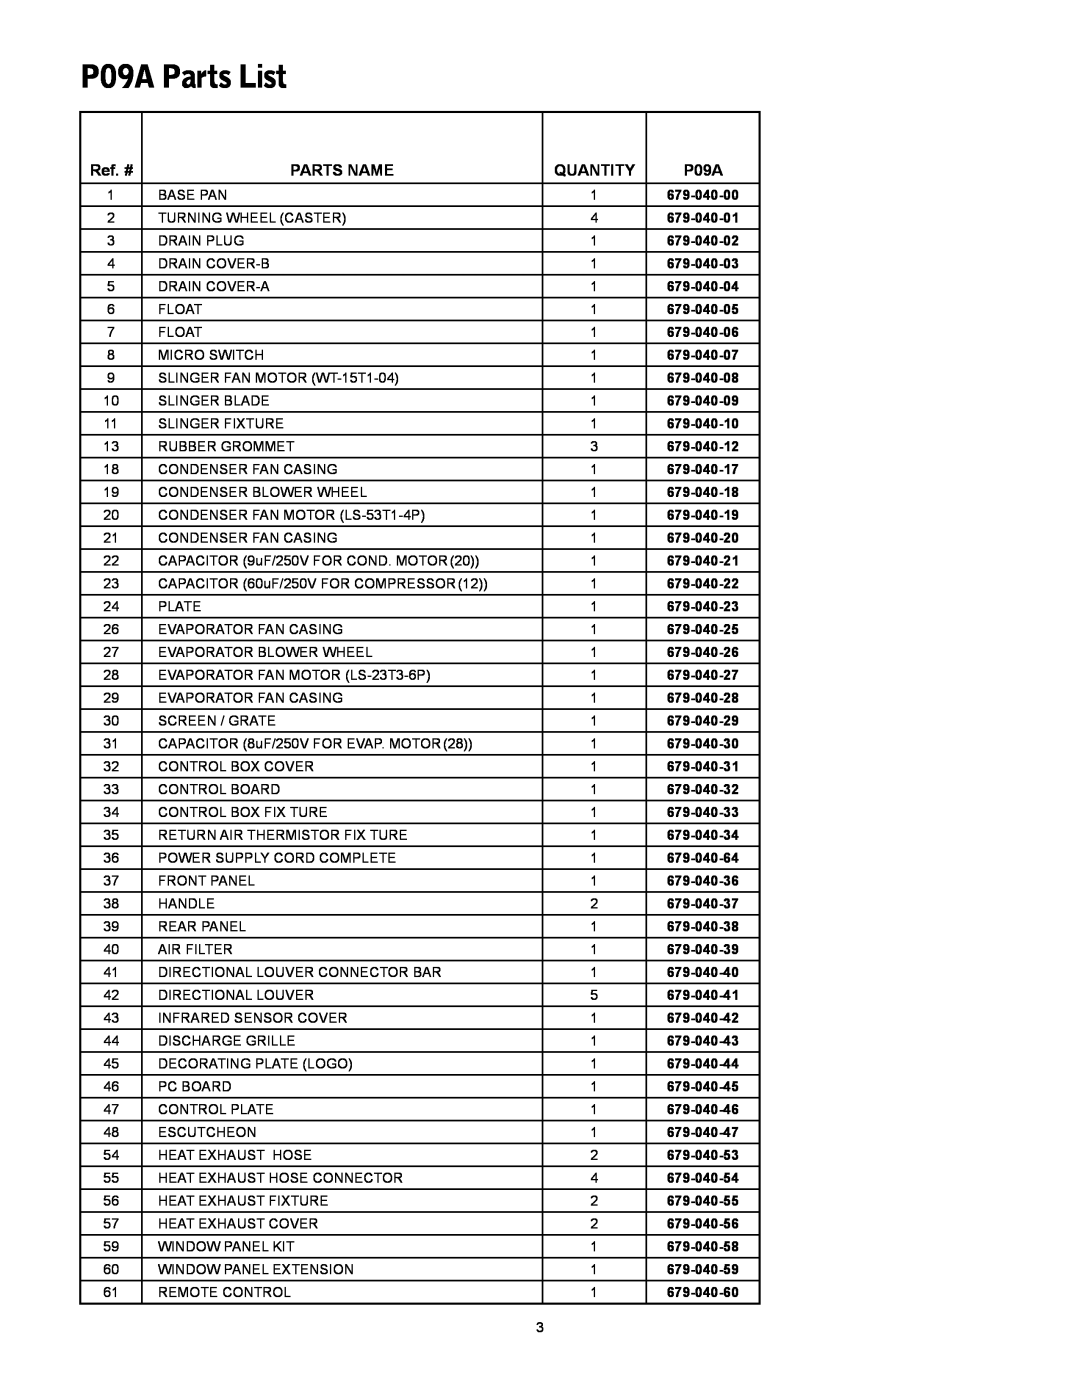 Friedrich P12A manual P09A Parts List, Ref. #, Parts Name, Quantity 